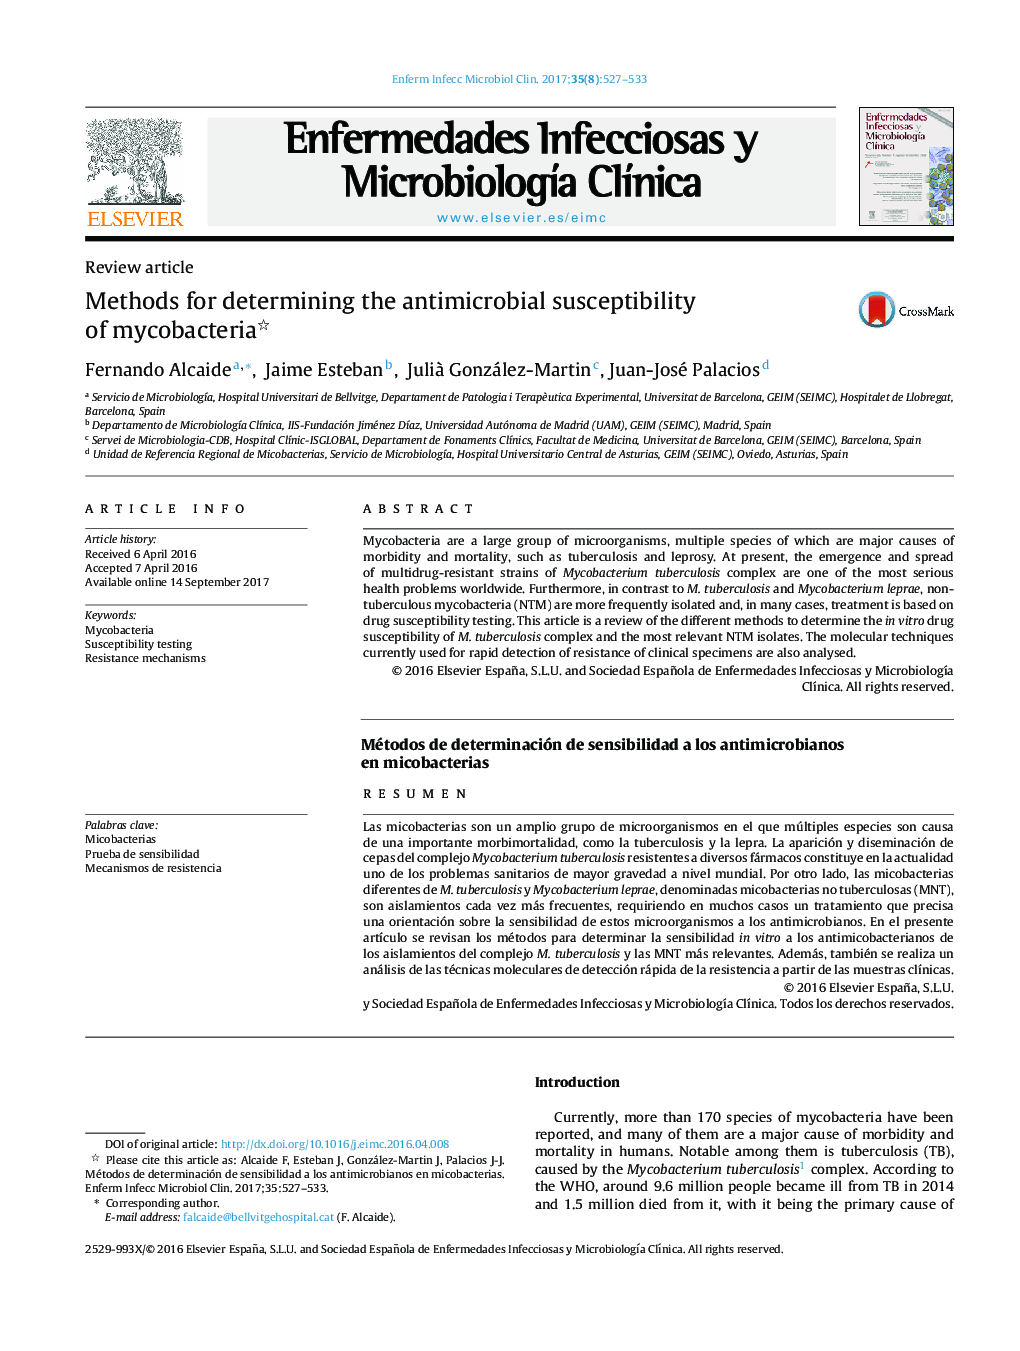 روشهای تعیین حساسیت ضد میکروبی میکوباکتریوم 